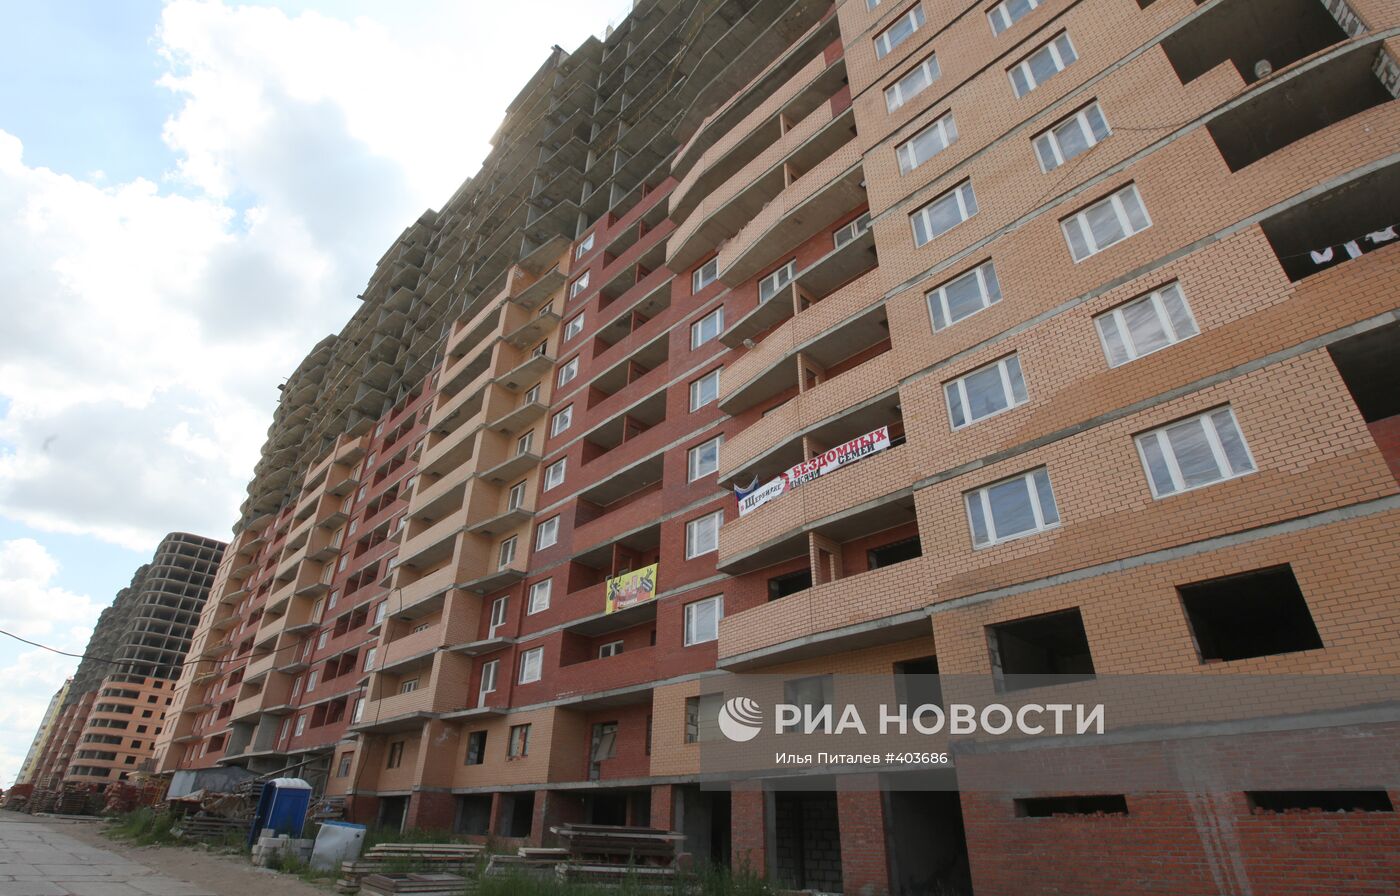 Обманутые дольщики захватили две квартиры в Щербинке